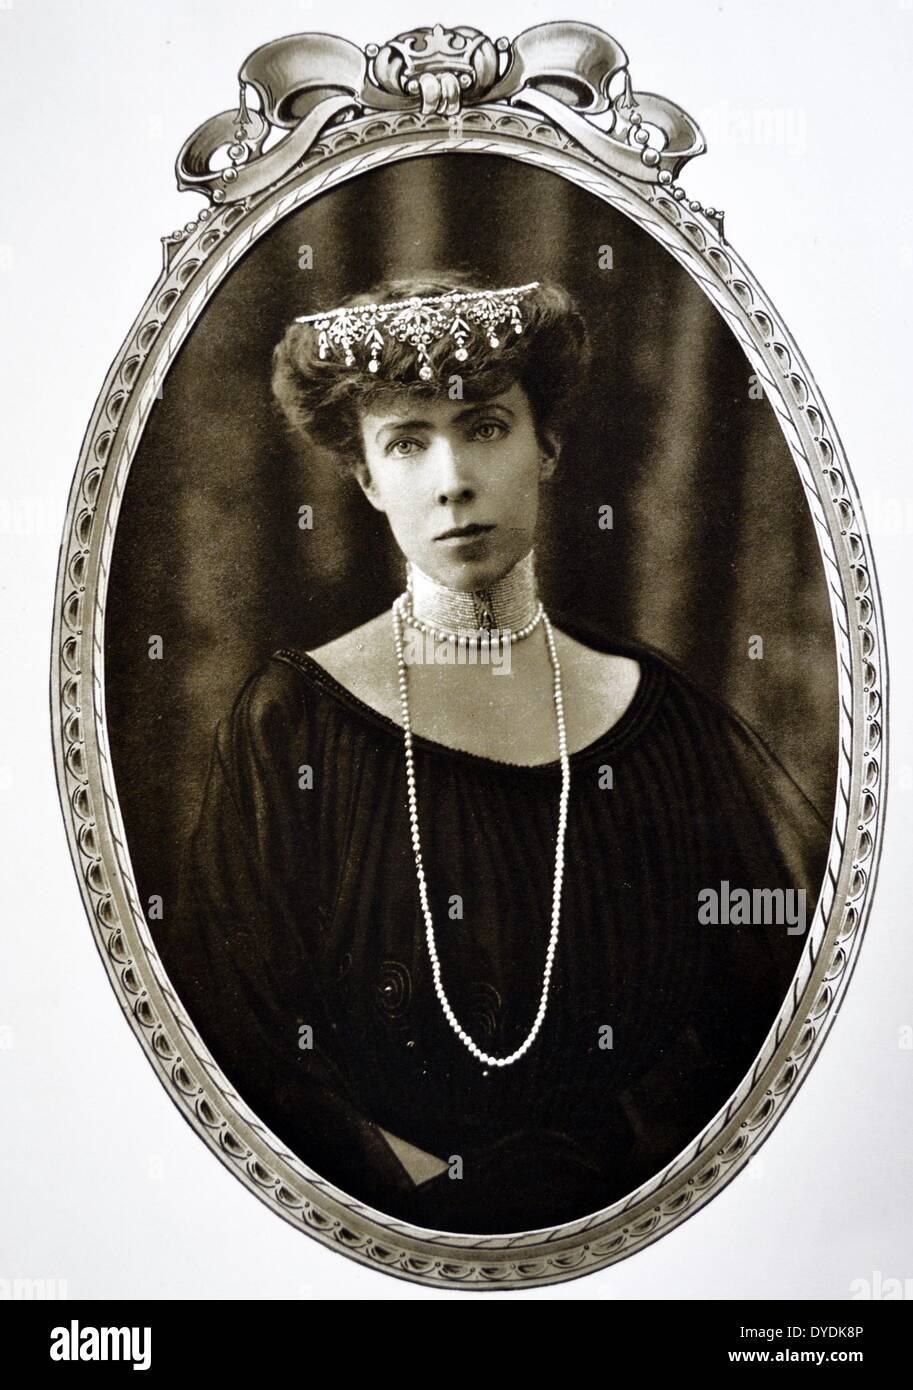 Her Majesty Elizabeth, Queen of the Belgians (1876-1965), Queen Consort of Albert of Belgium and mother of Leopold III of Belgium. 1915. Stock Photo